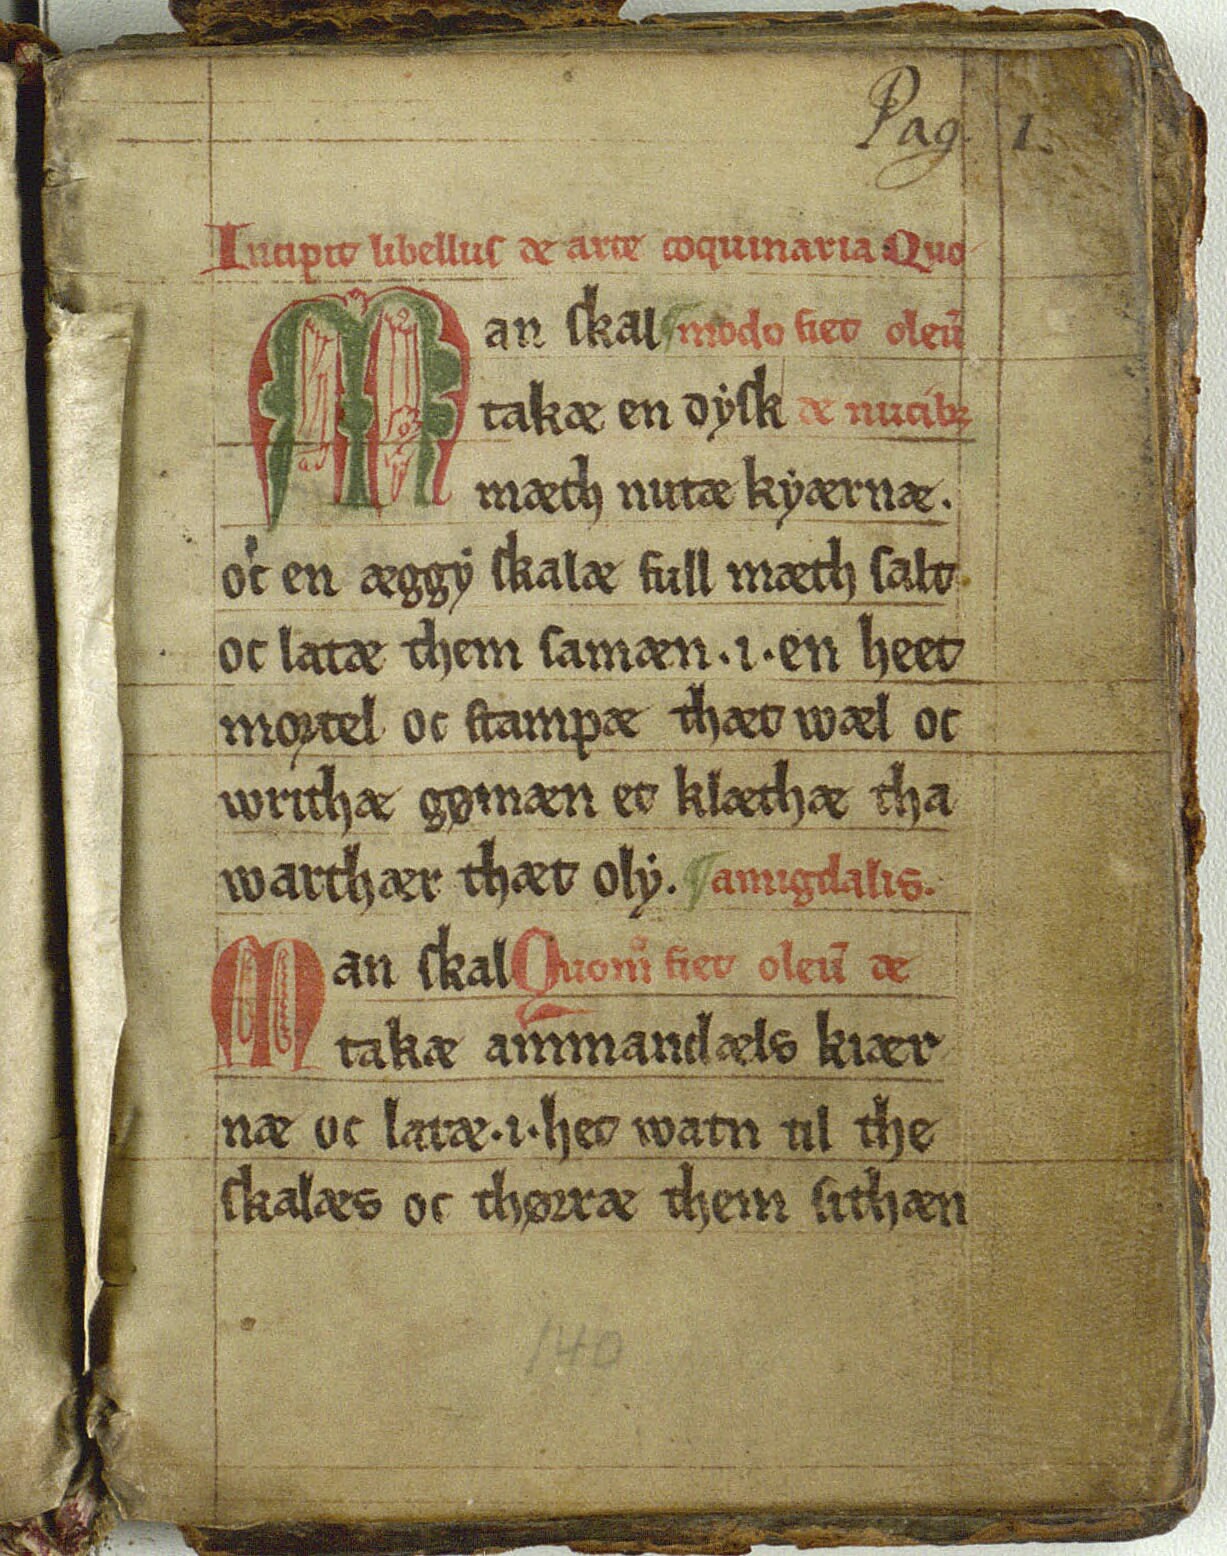 Den eldste kokeboken i Norden. Bilde av en side med oppskrift på valnøttolje